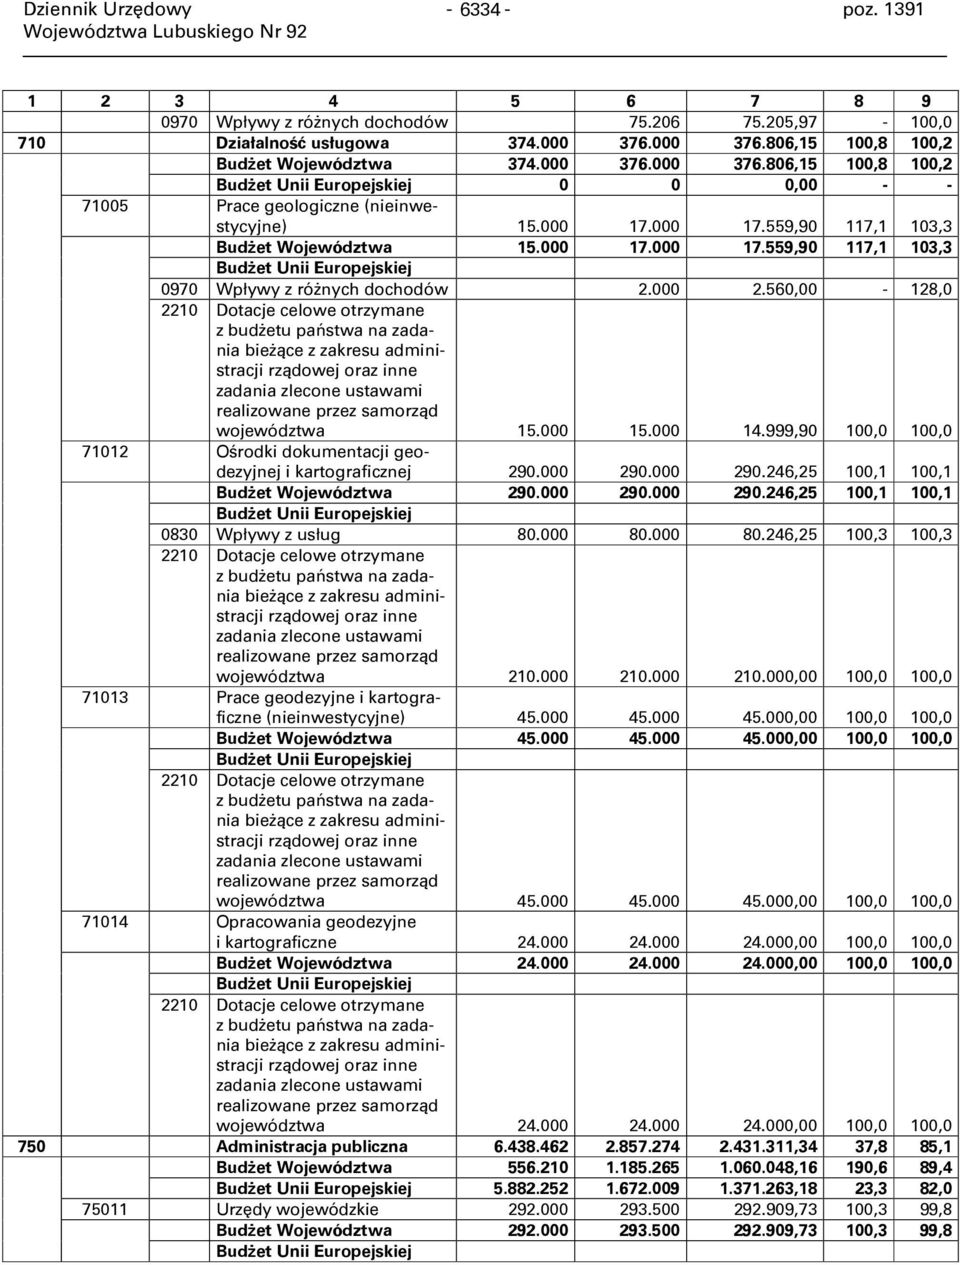 000 2.560,00-128,0 2210 Dotacje celowe otrzymane z budżetu państwa na zadania bieżące z zakresu administracji rządowej oraz inne zadania zlecone ustawami realizowane przez samorząd województwa 15.